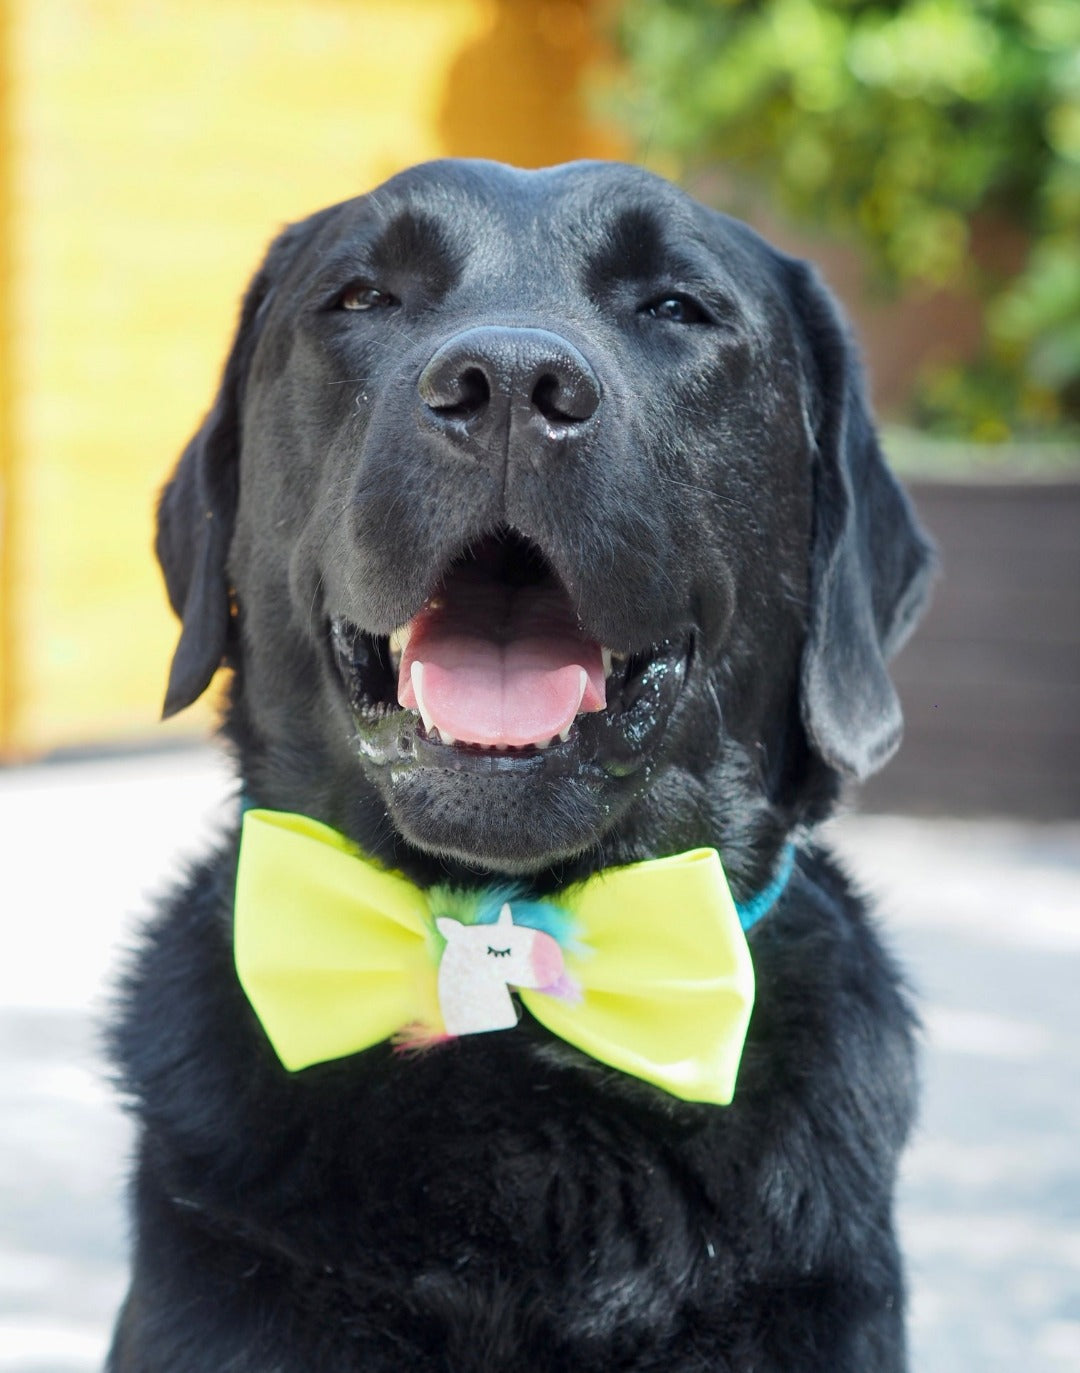 Schwarzer Labrador trägt neongelbe Hundeschleife mit glitzerndem Einhorn